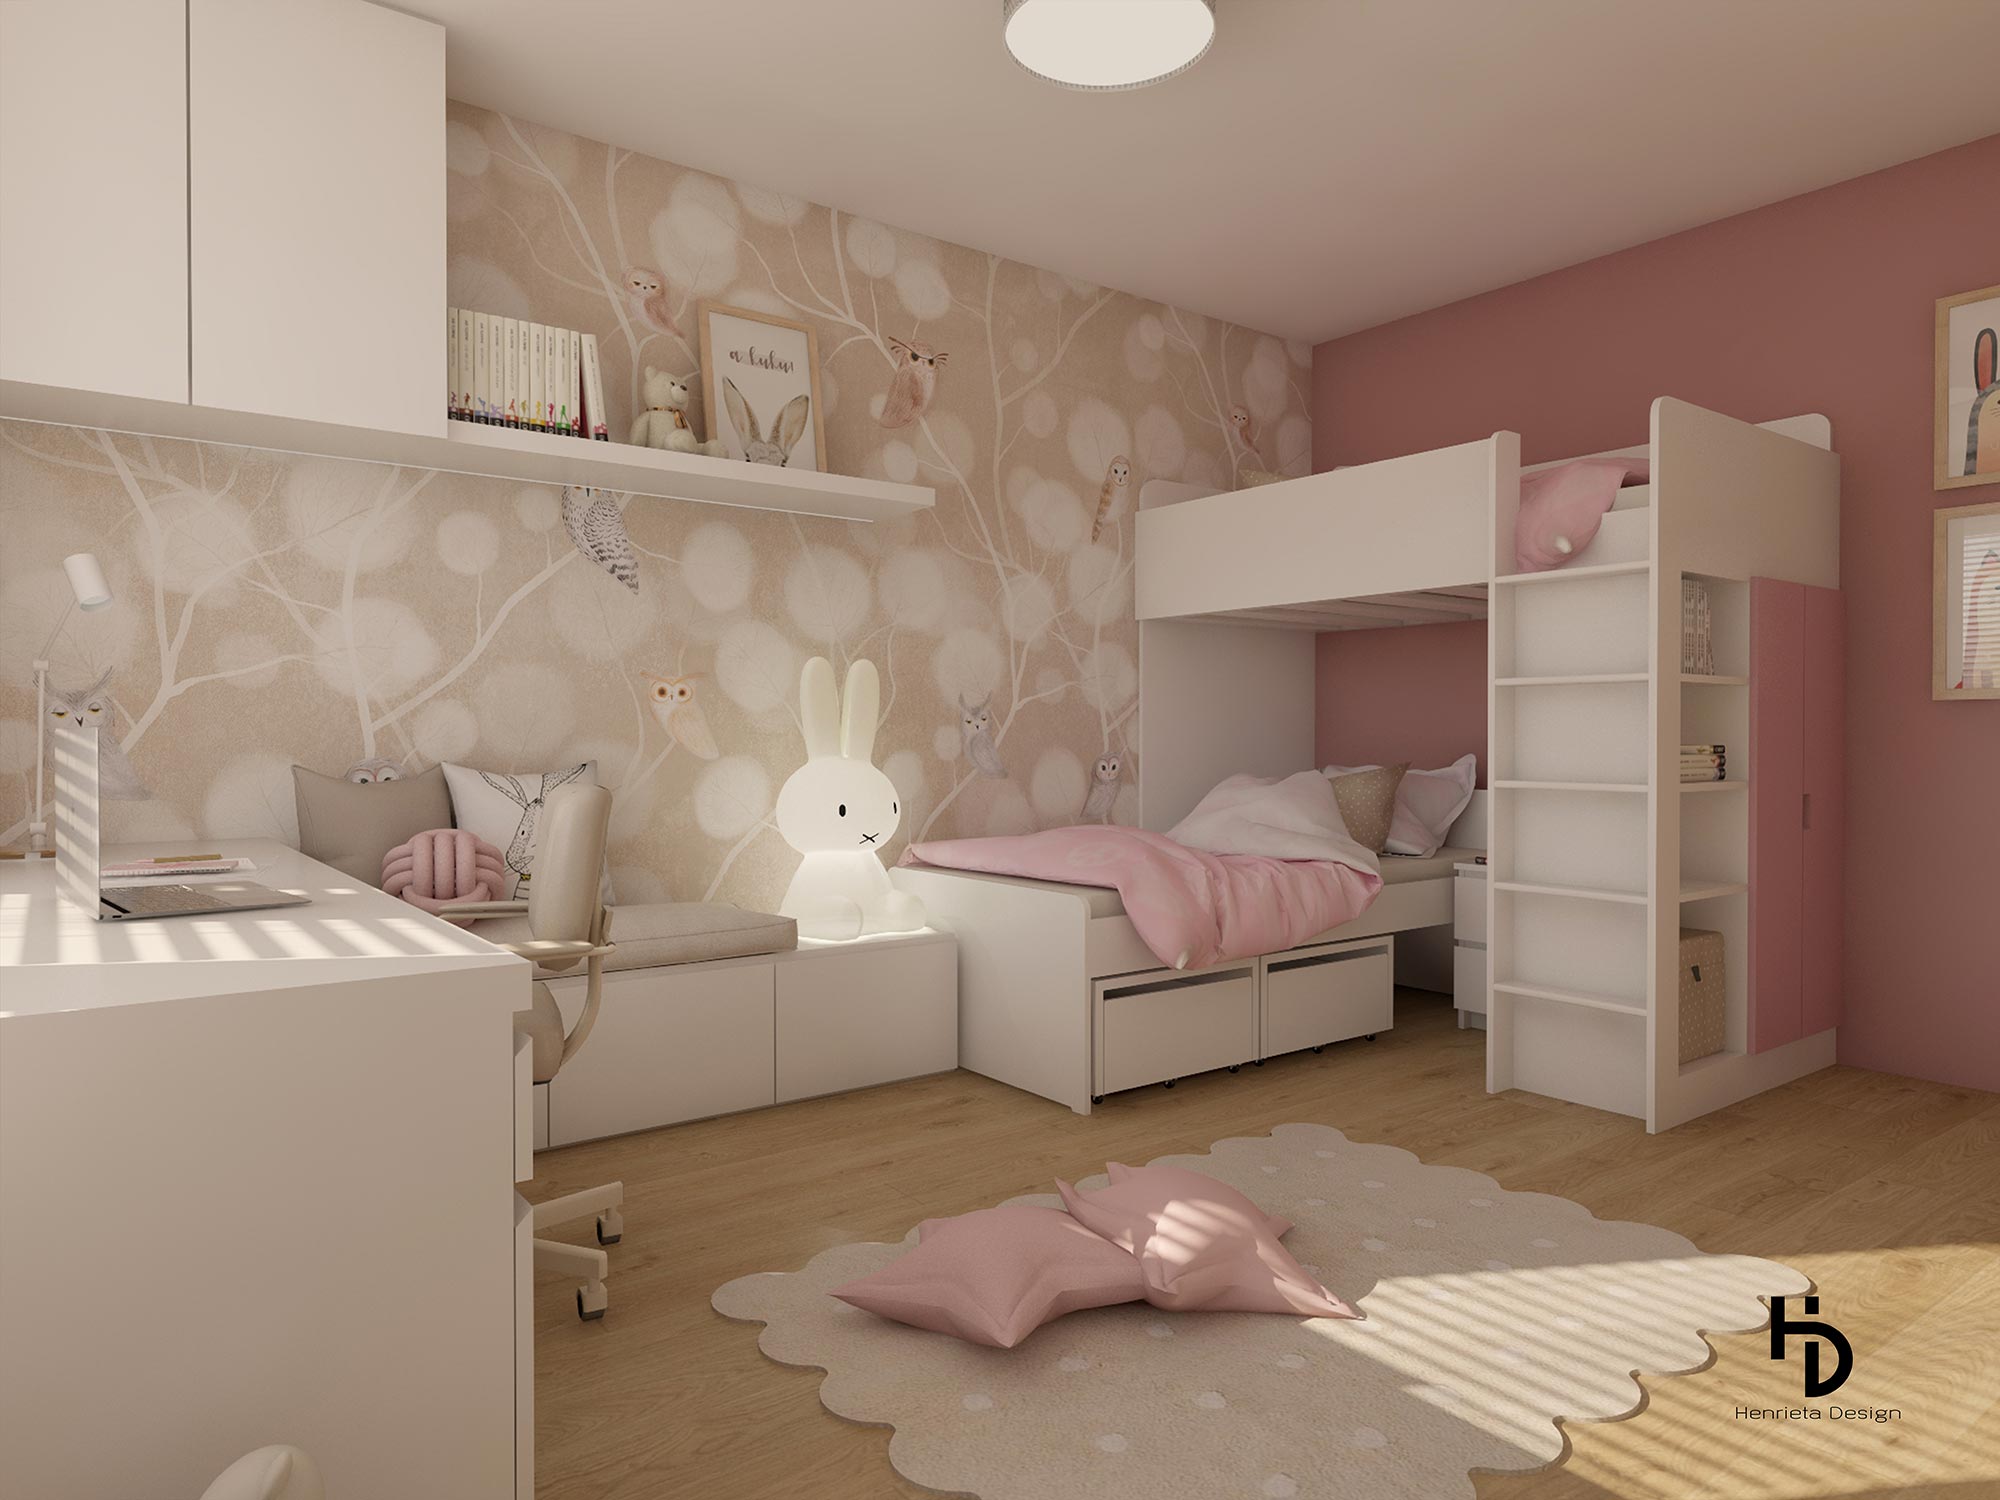 Kids bedroom design by Henrieta Design